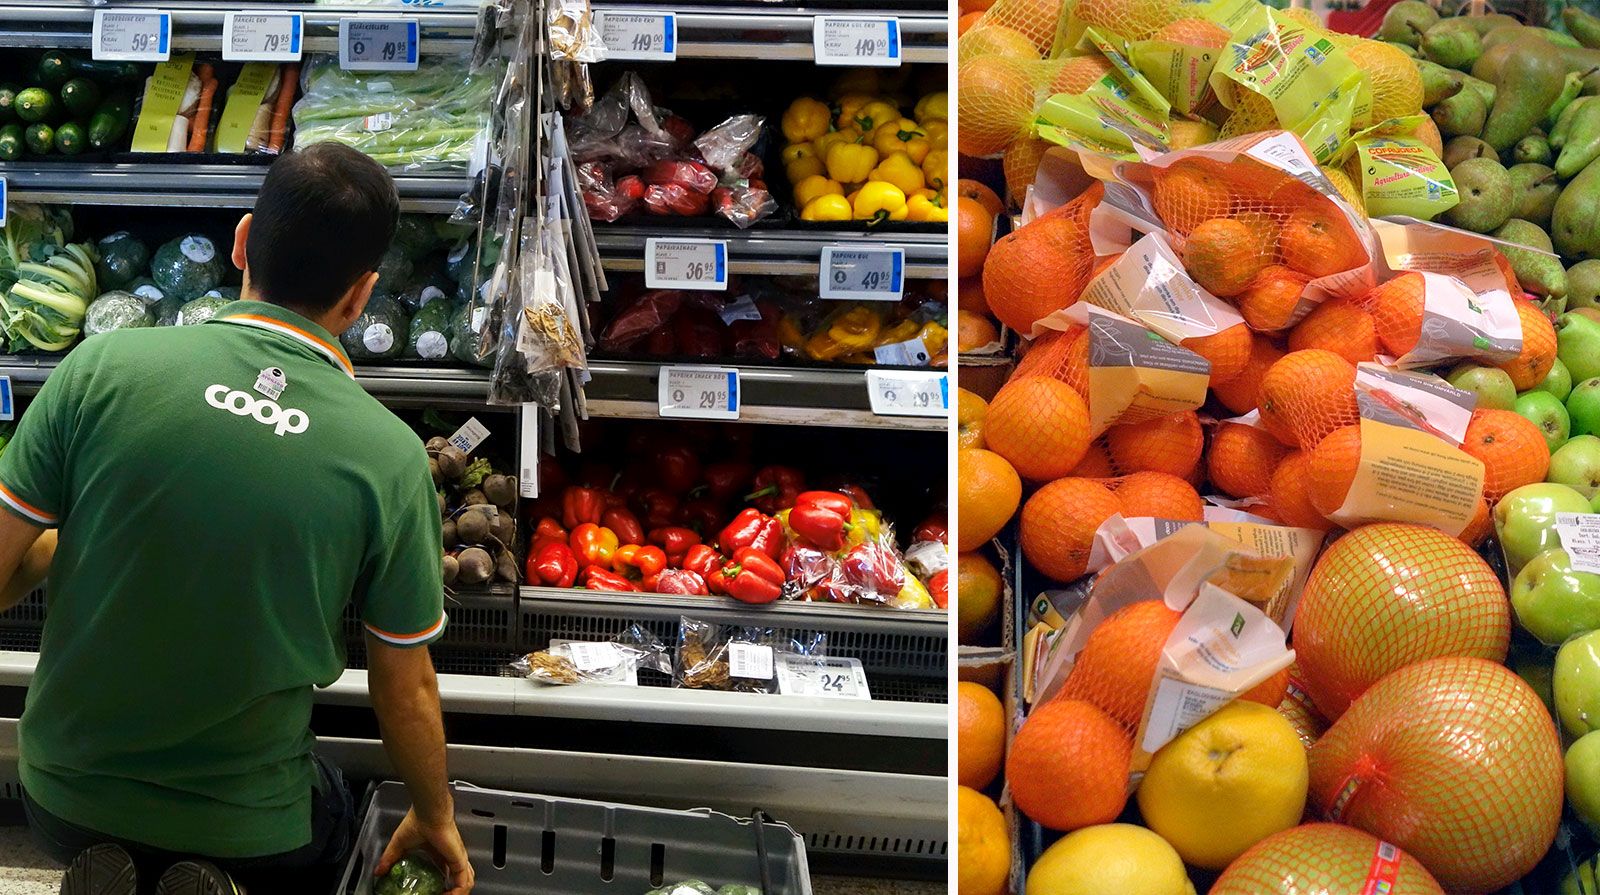 ARKIVBILD. Mängder av frukt slängs, ofta helt i onödan. ”Man säljer mer i flerpack”, enligt en ICA-handlare Aftonbladet har pratat med. 